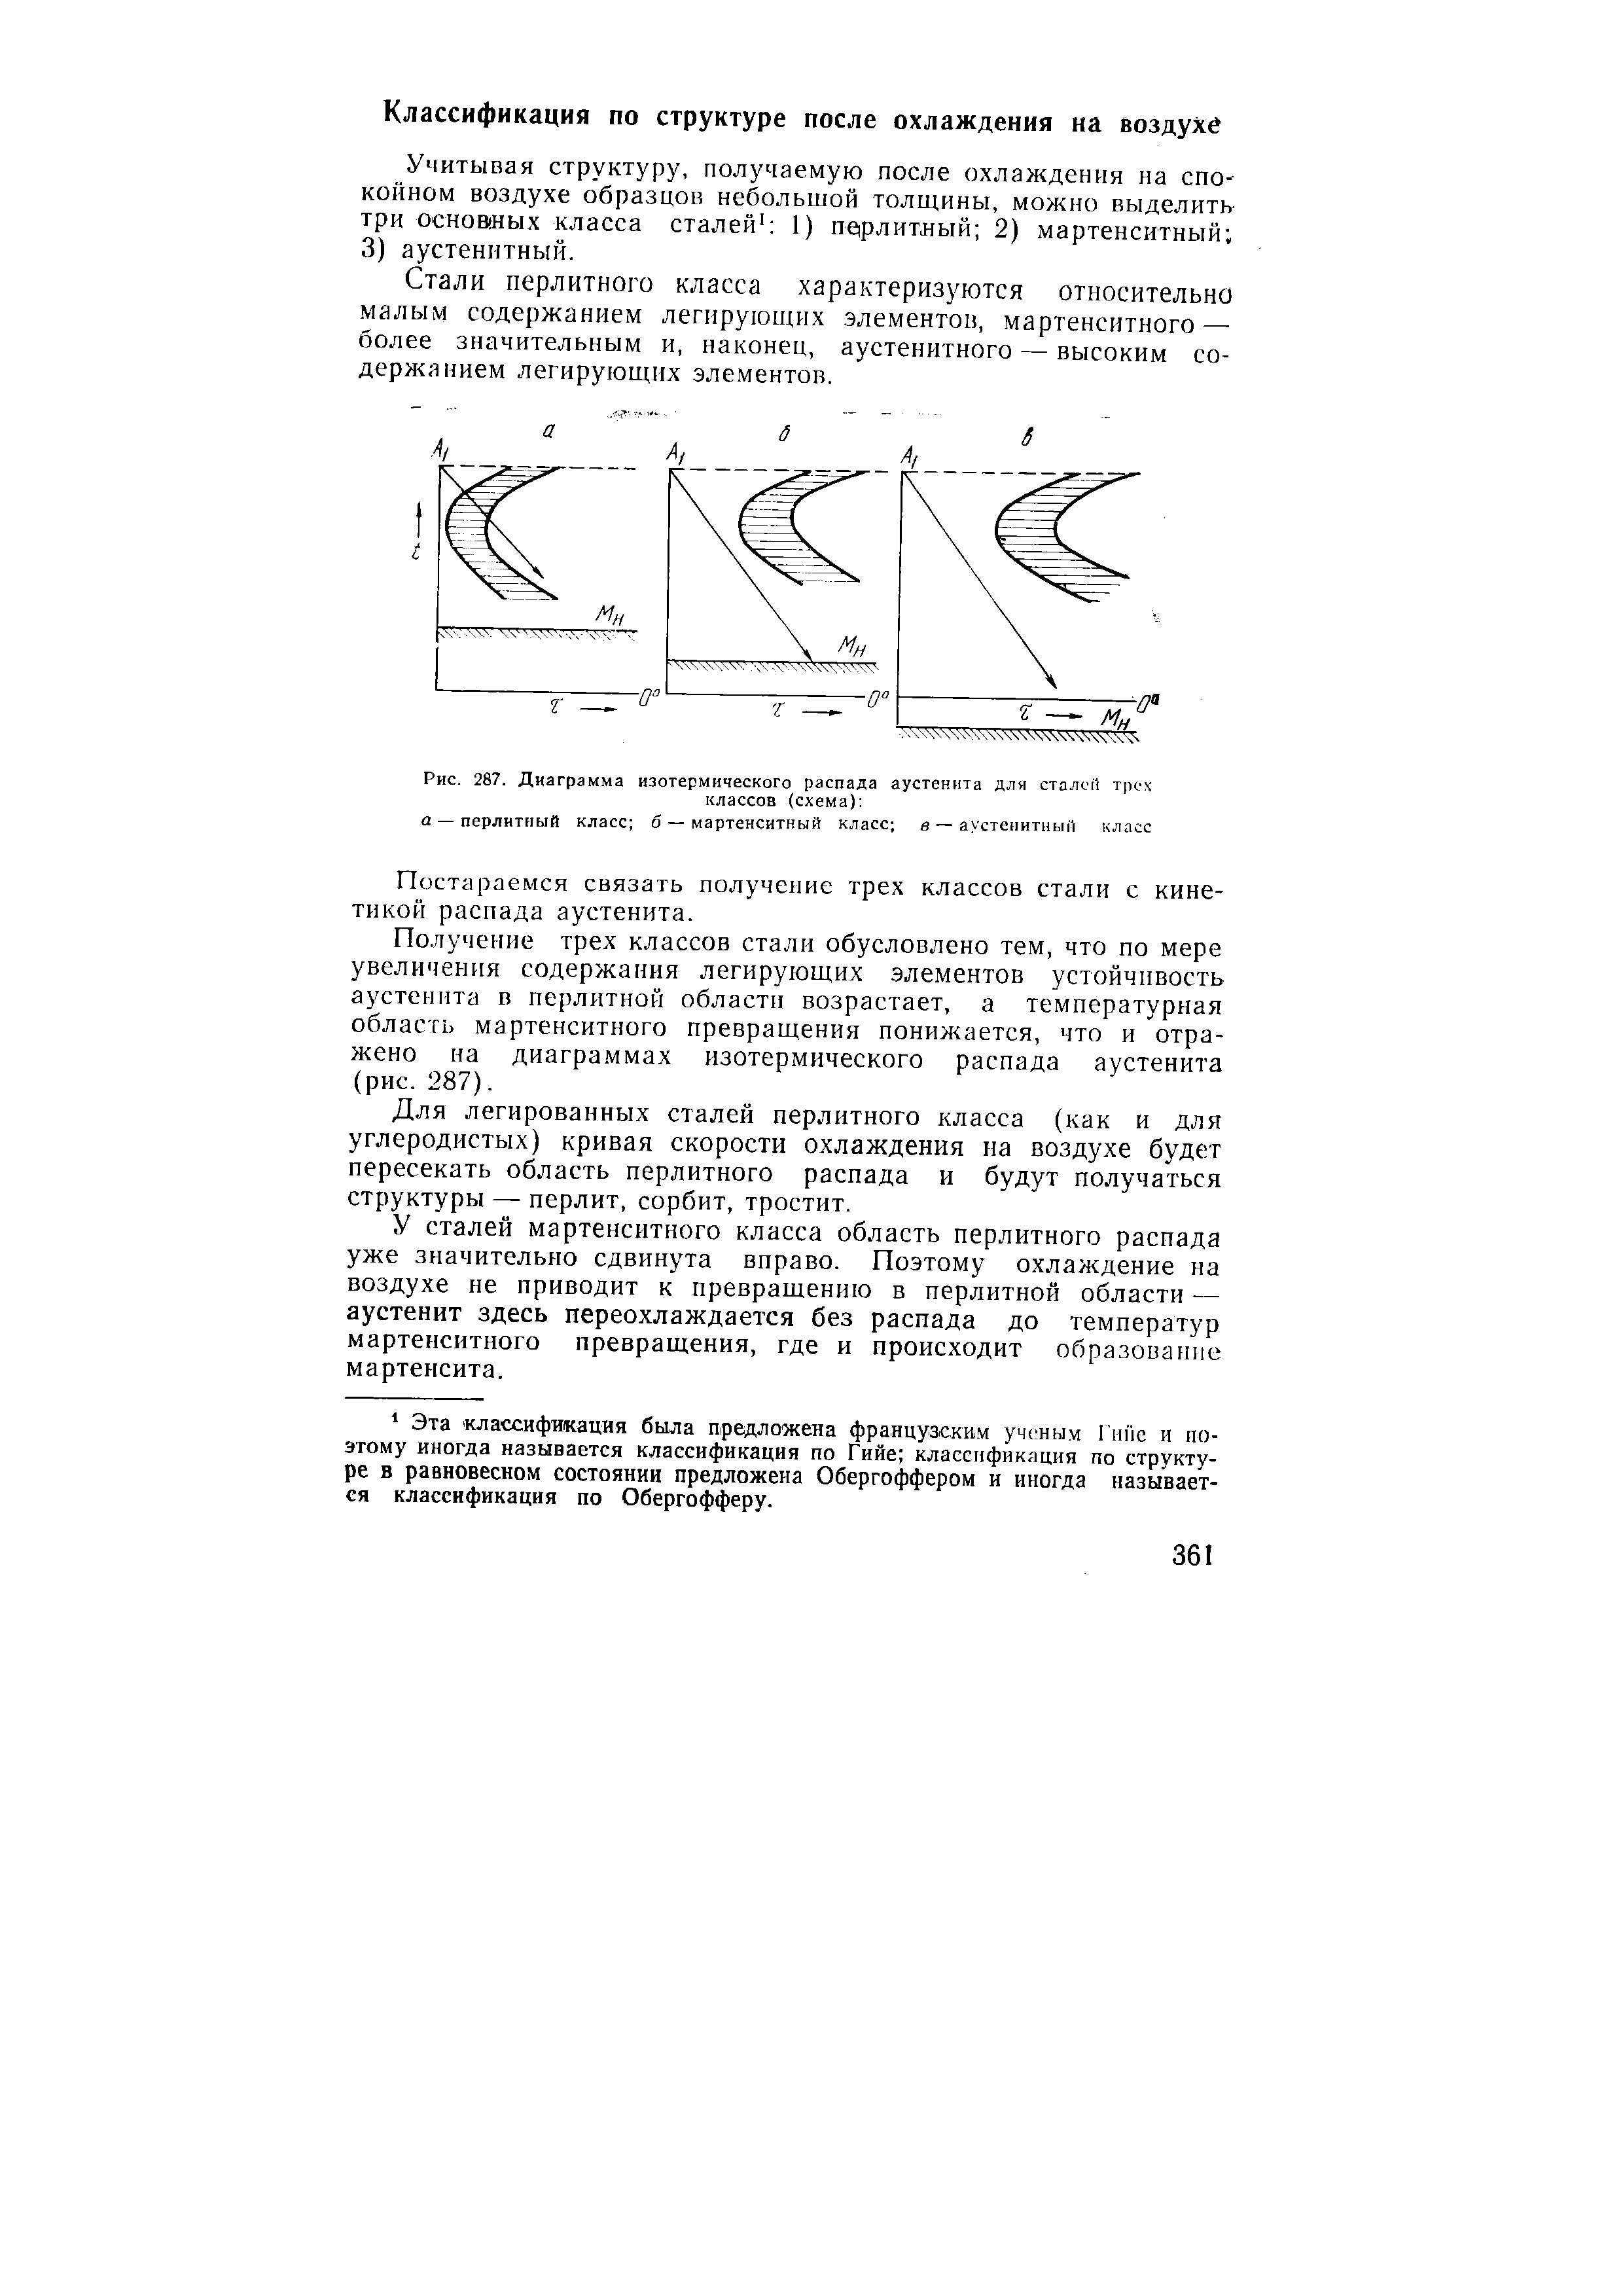 Рис. 287, Диаграмма изотермического распада аустенита для сталсп трех классов (схема) 
